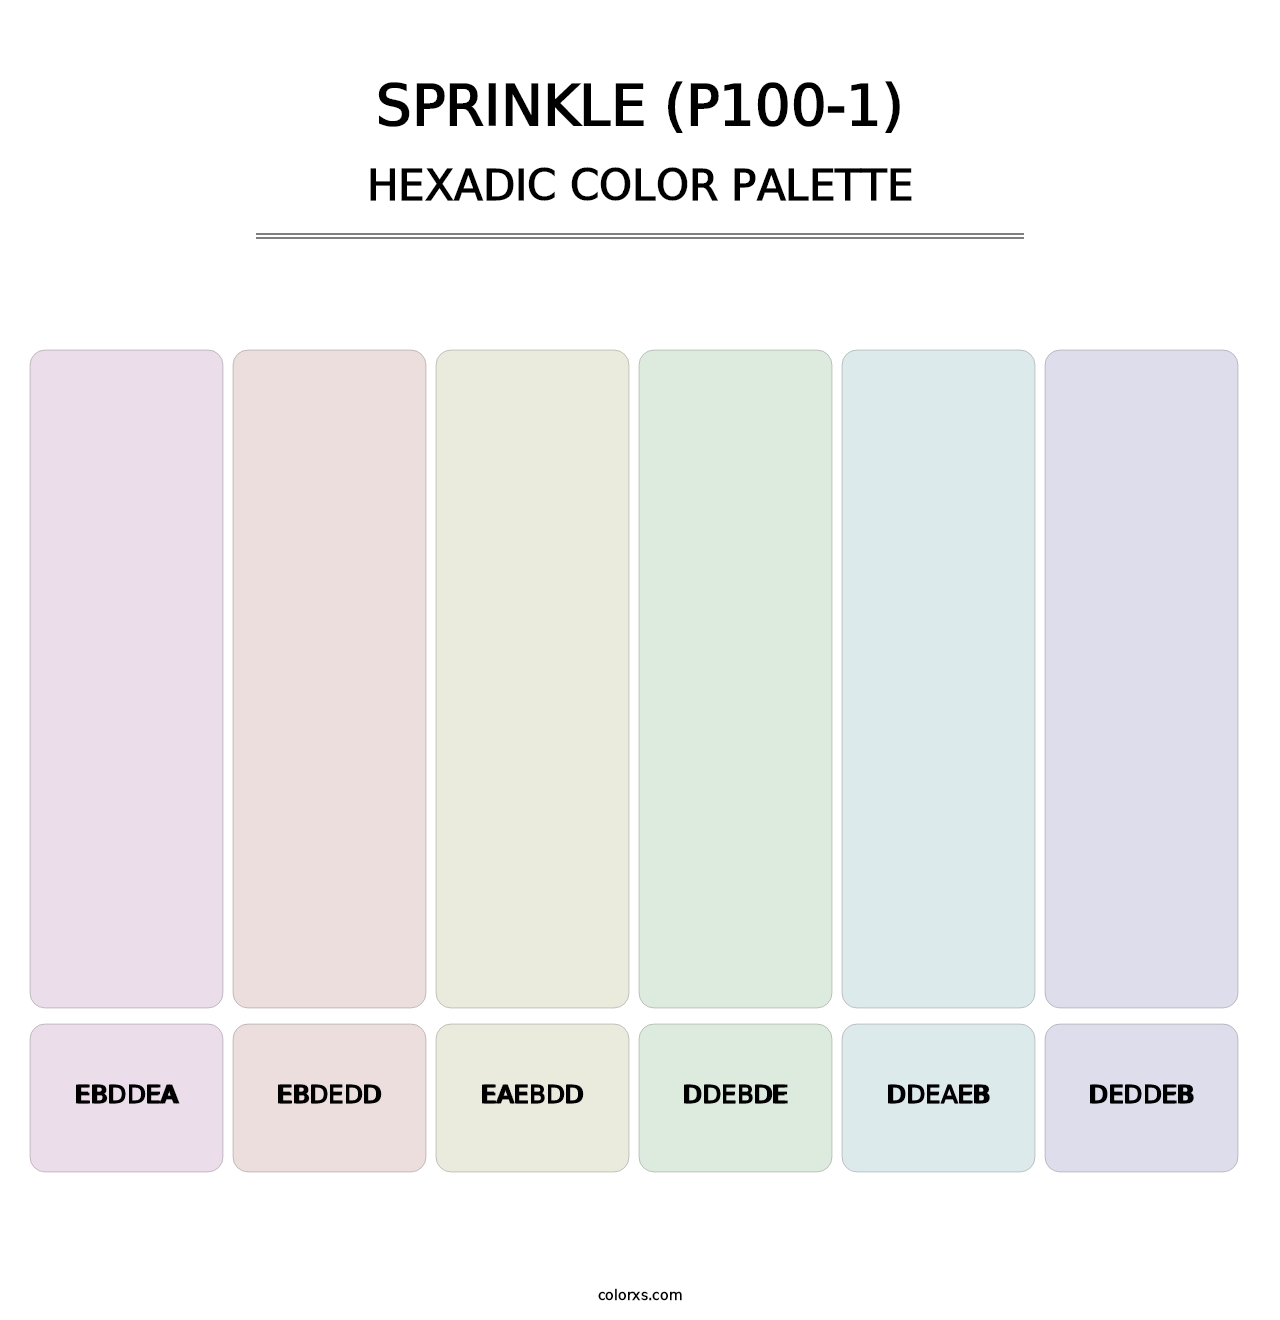 Sprinkle (P100-1) - Hexadic Color Palette